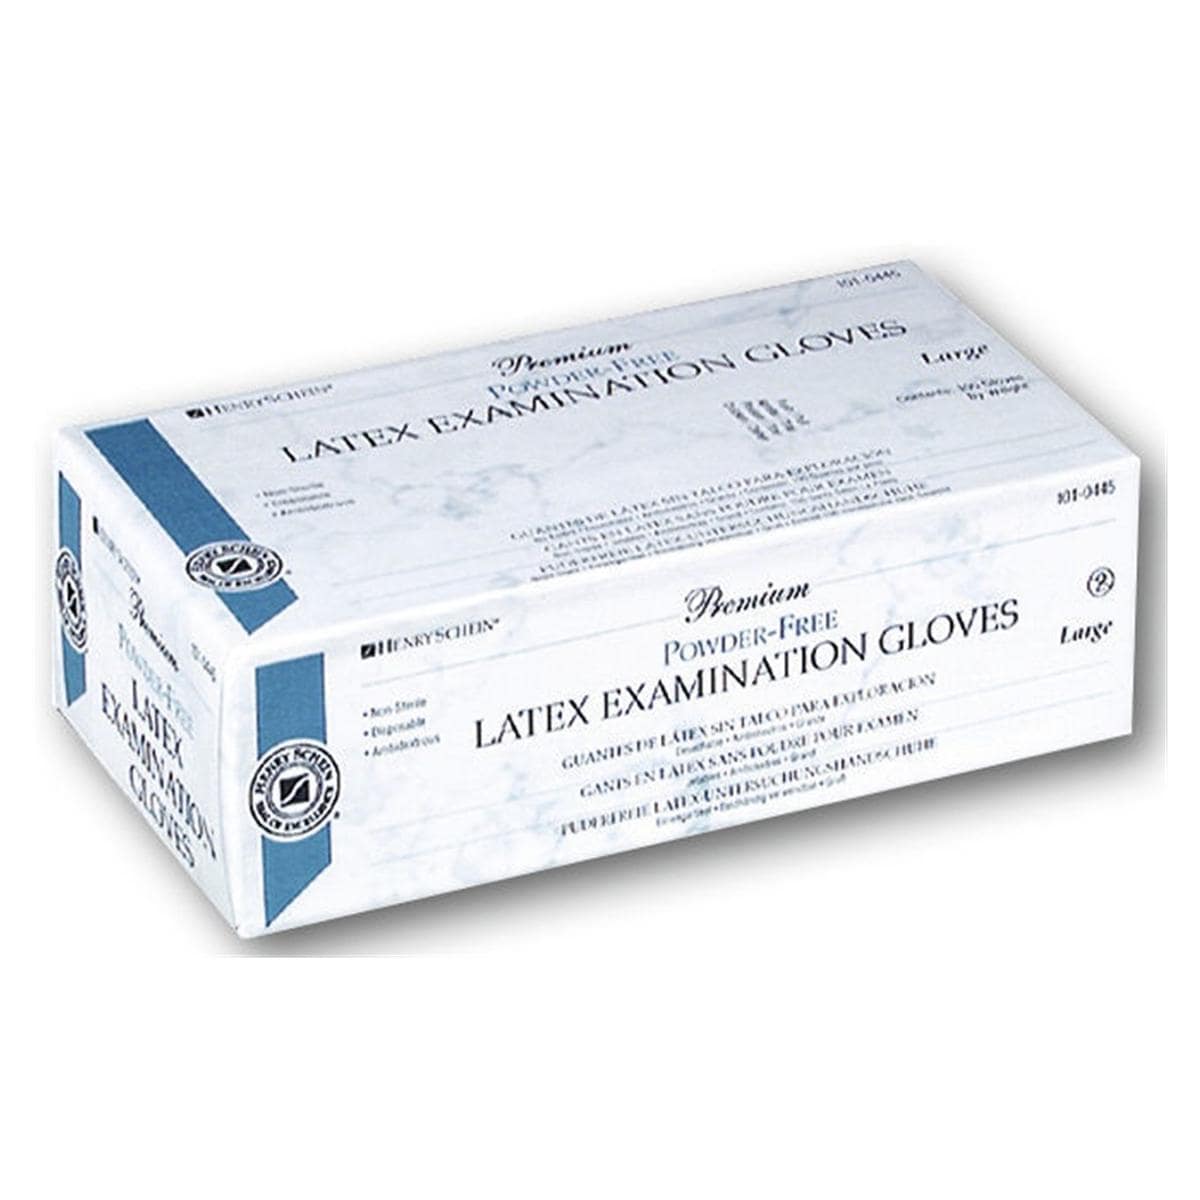 Premium Latex Examination Gloves - M - 100 pcs